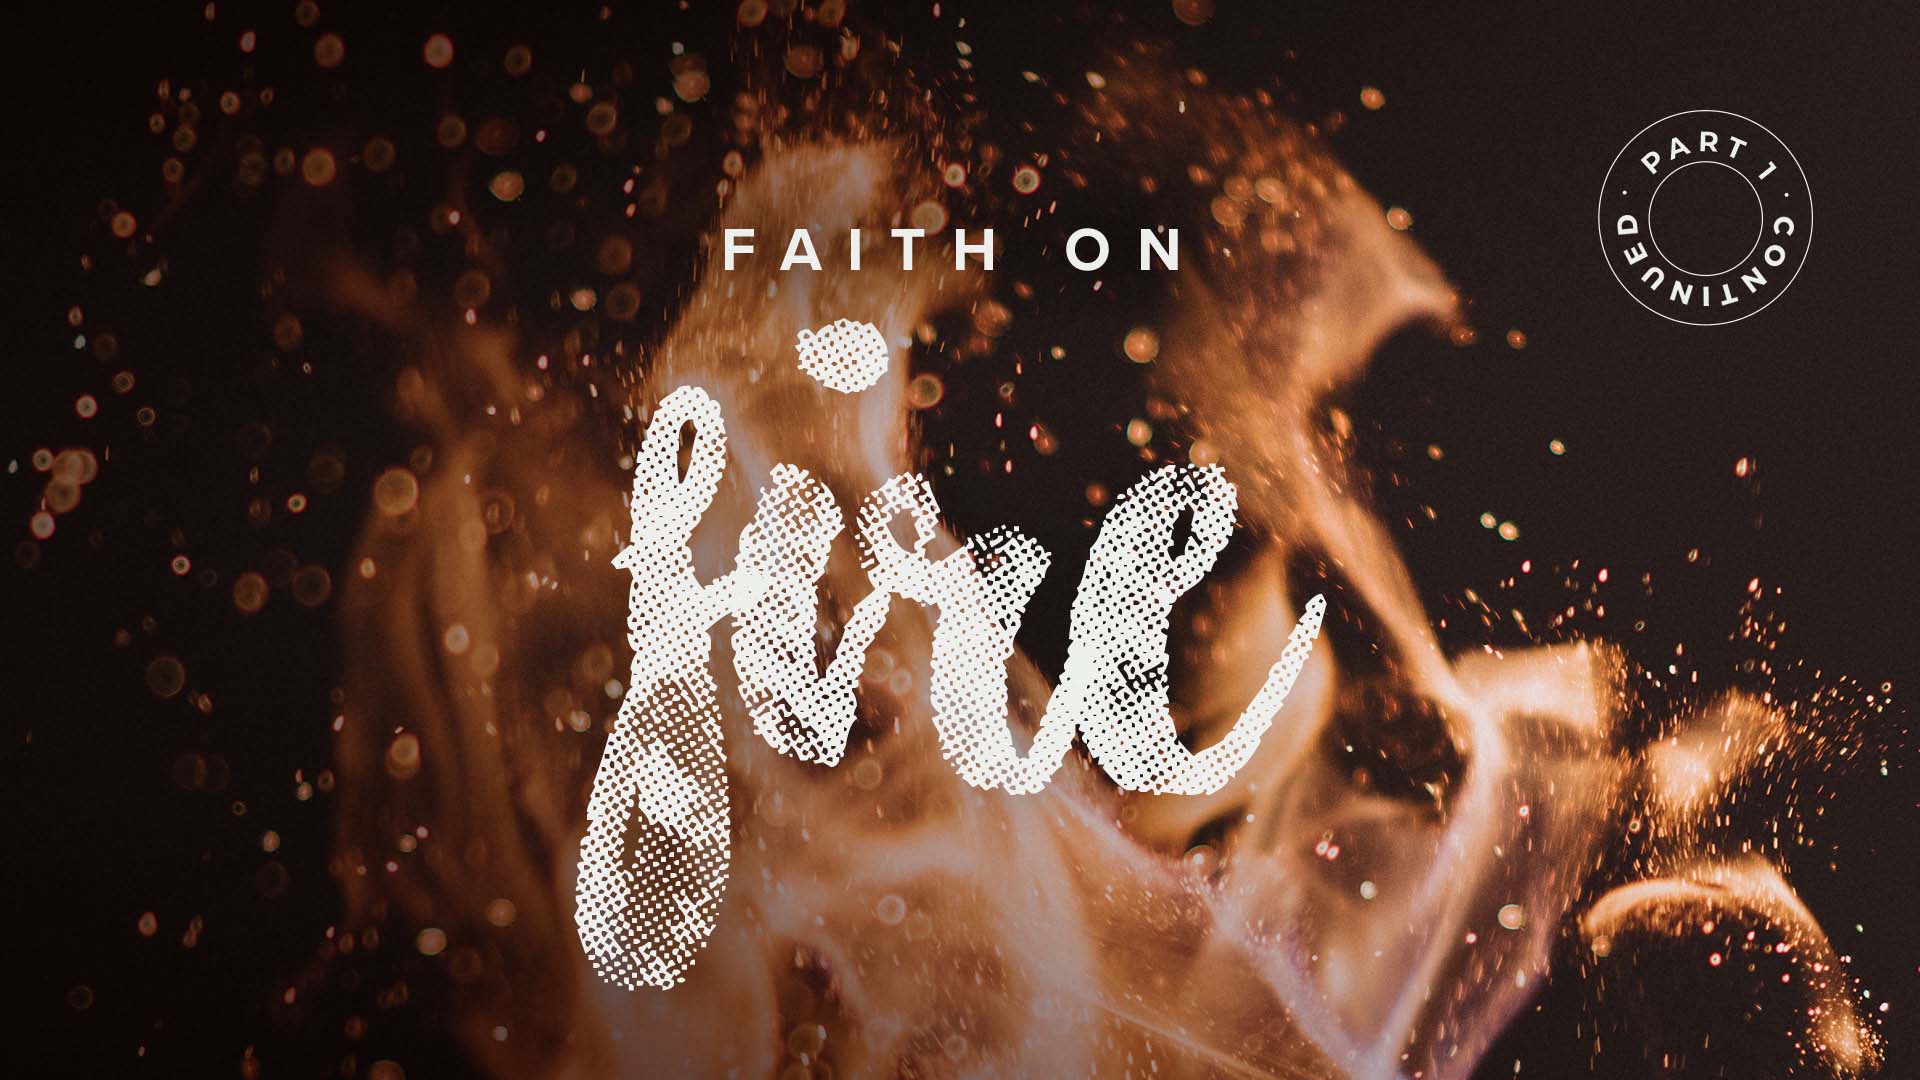 Faith On Fire – Part 1 Continued